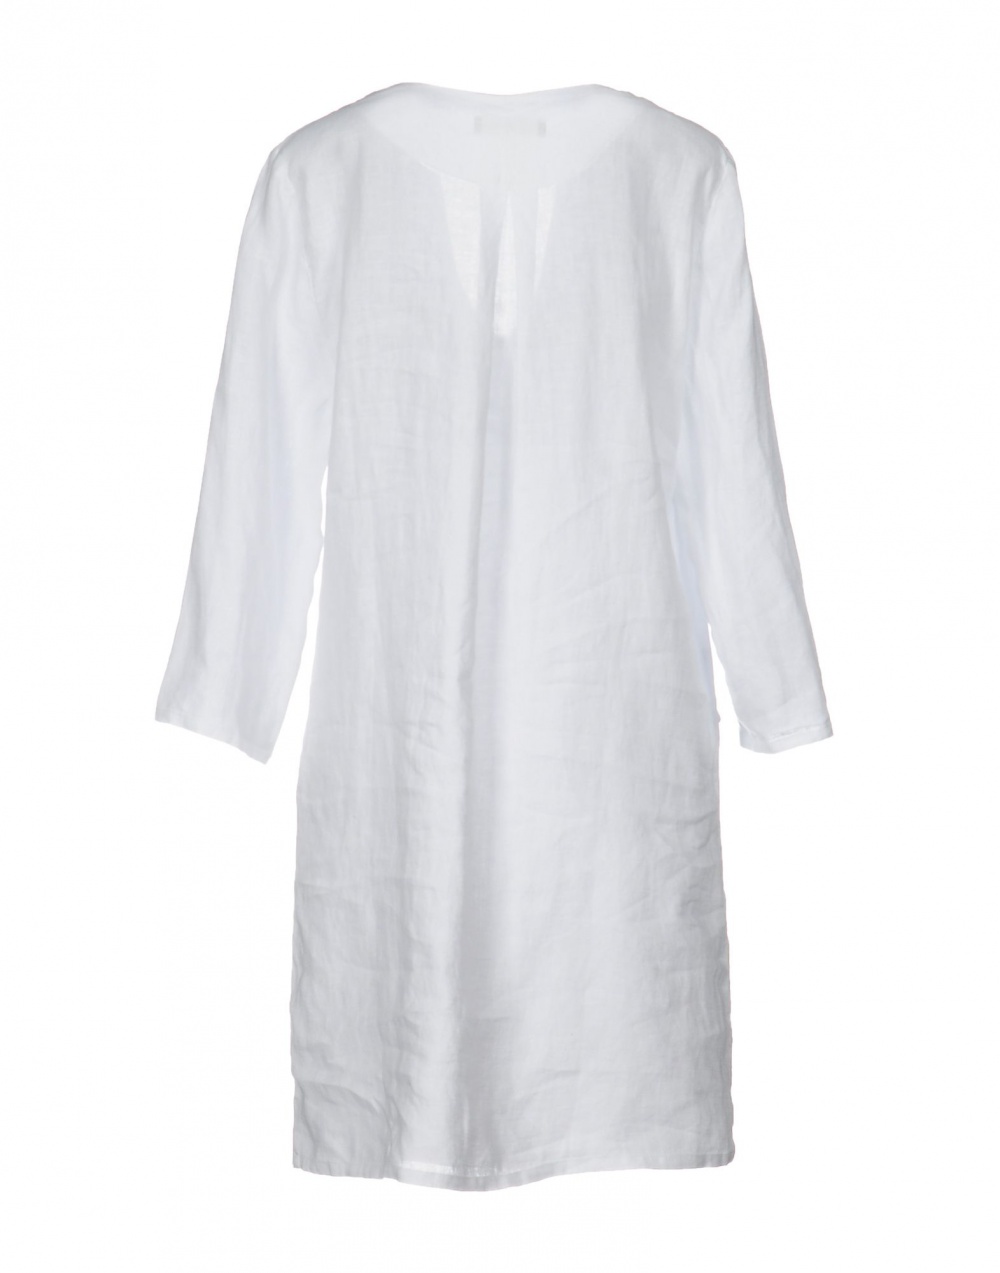 Льняное платье STEFANEL , 48 (Российский размер) дизайнер:46 (IT) Белый